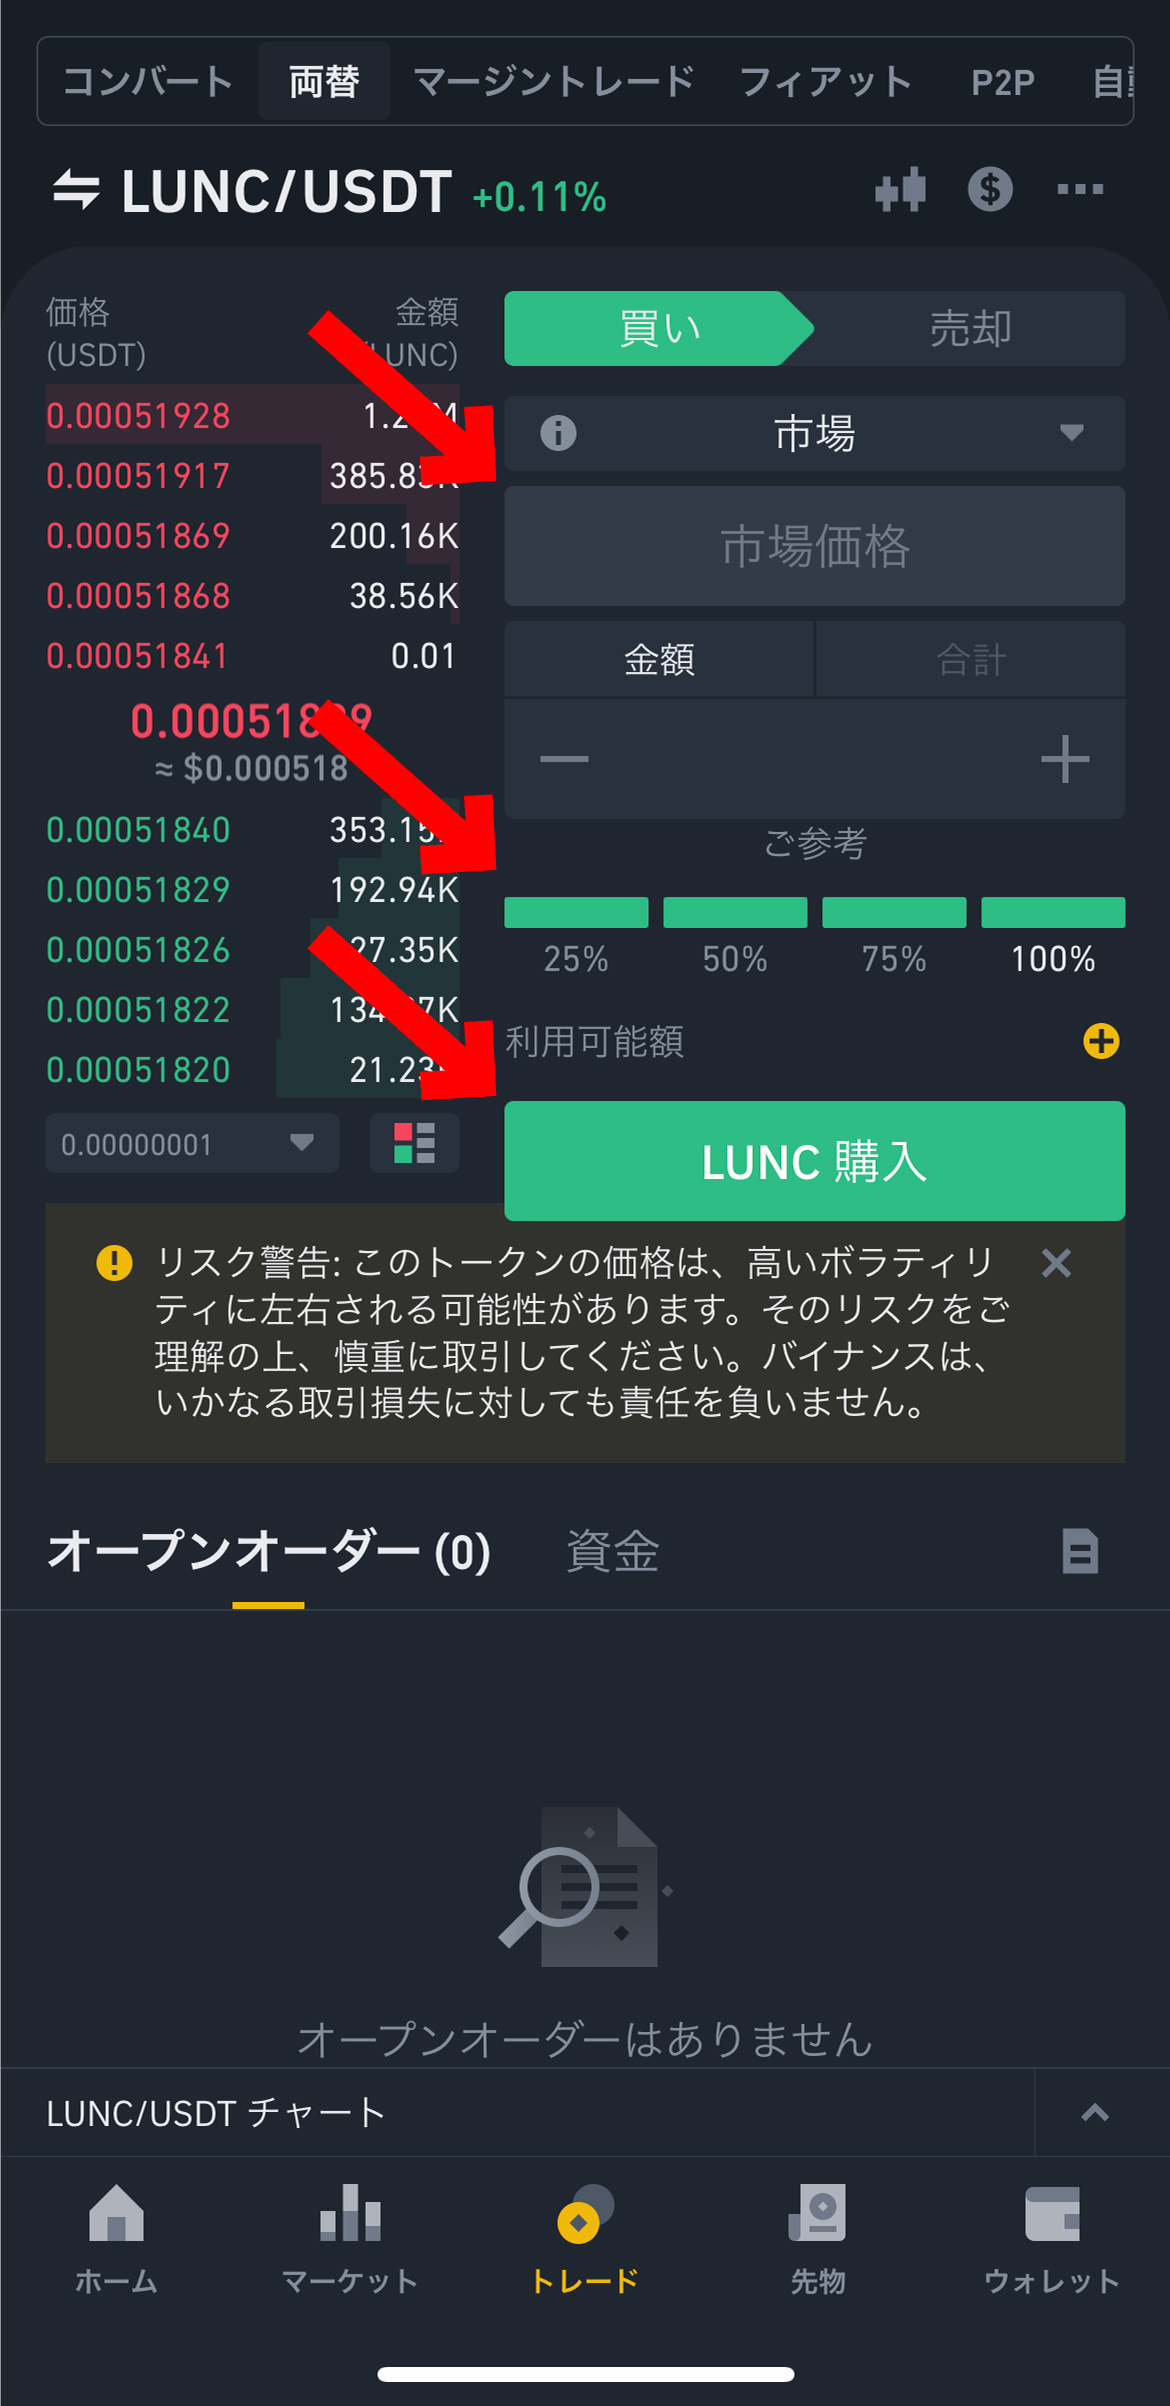 LUNCの買い方【スマホで簡単】【バイナンス】【コインチェック】【LUNA】LUNC 購入をクリックします。